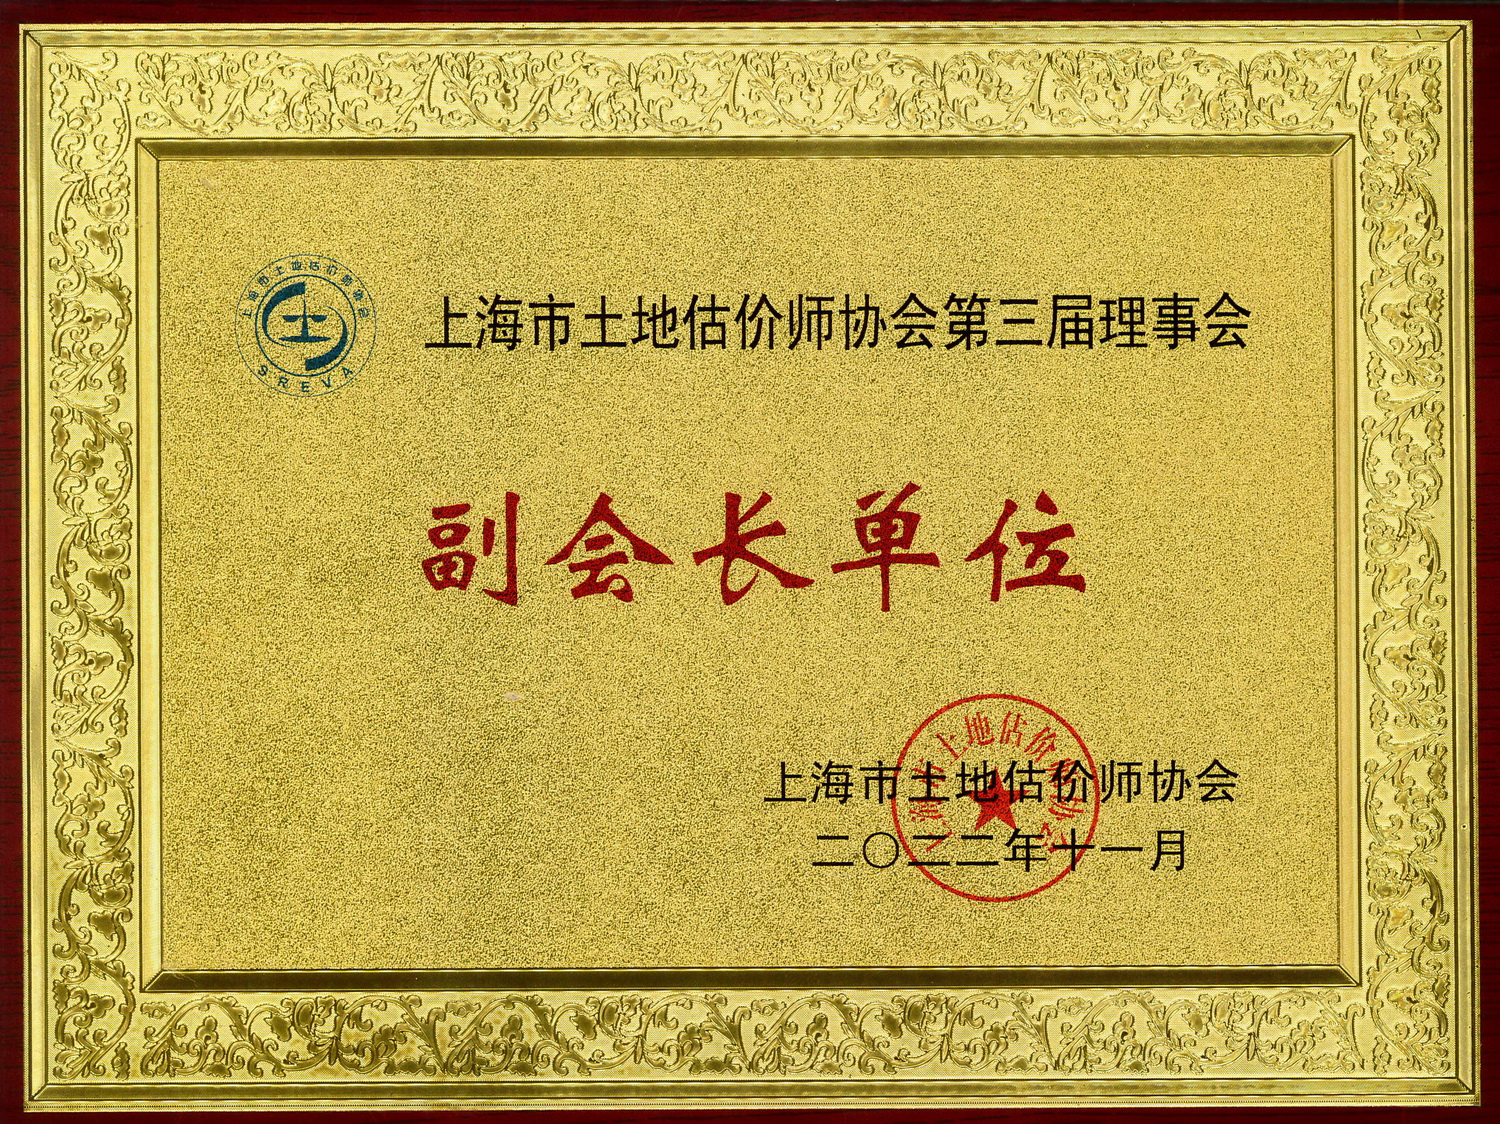 上海市土地估价师协会副会长单位